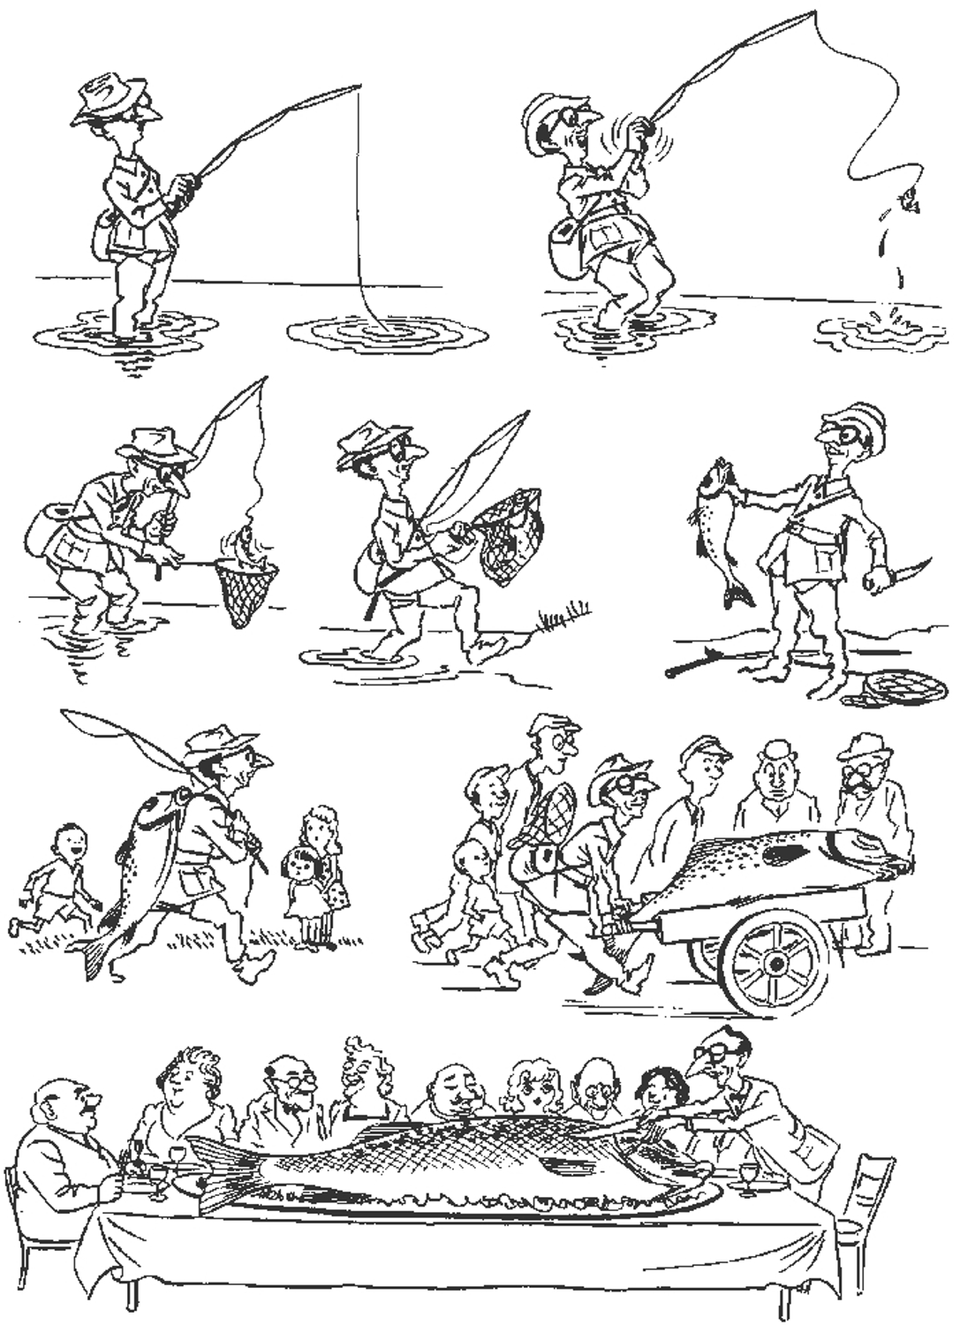 Карикатуры херлуфа бидструпа